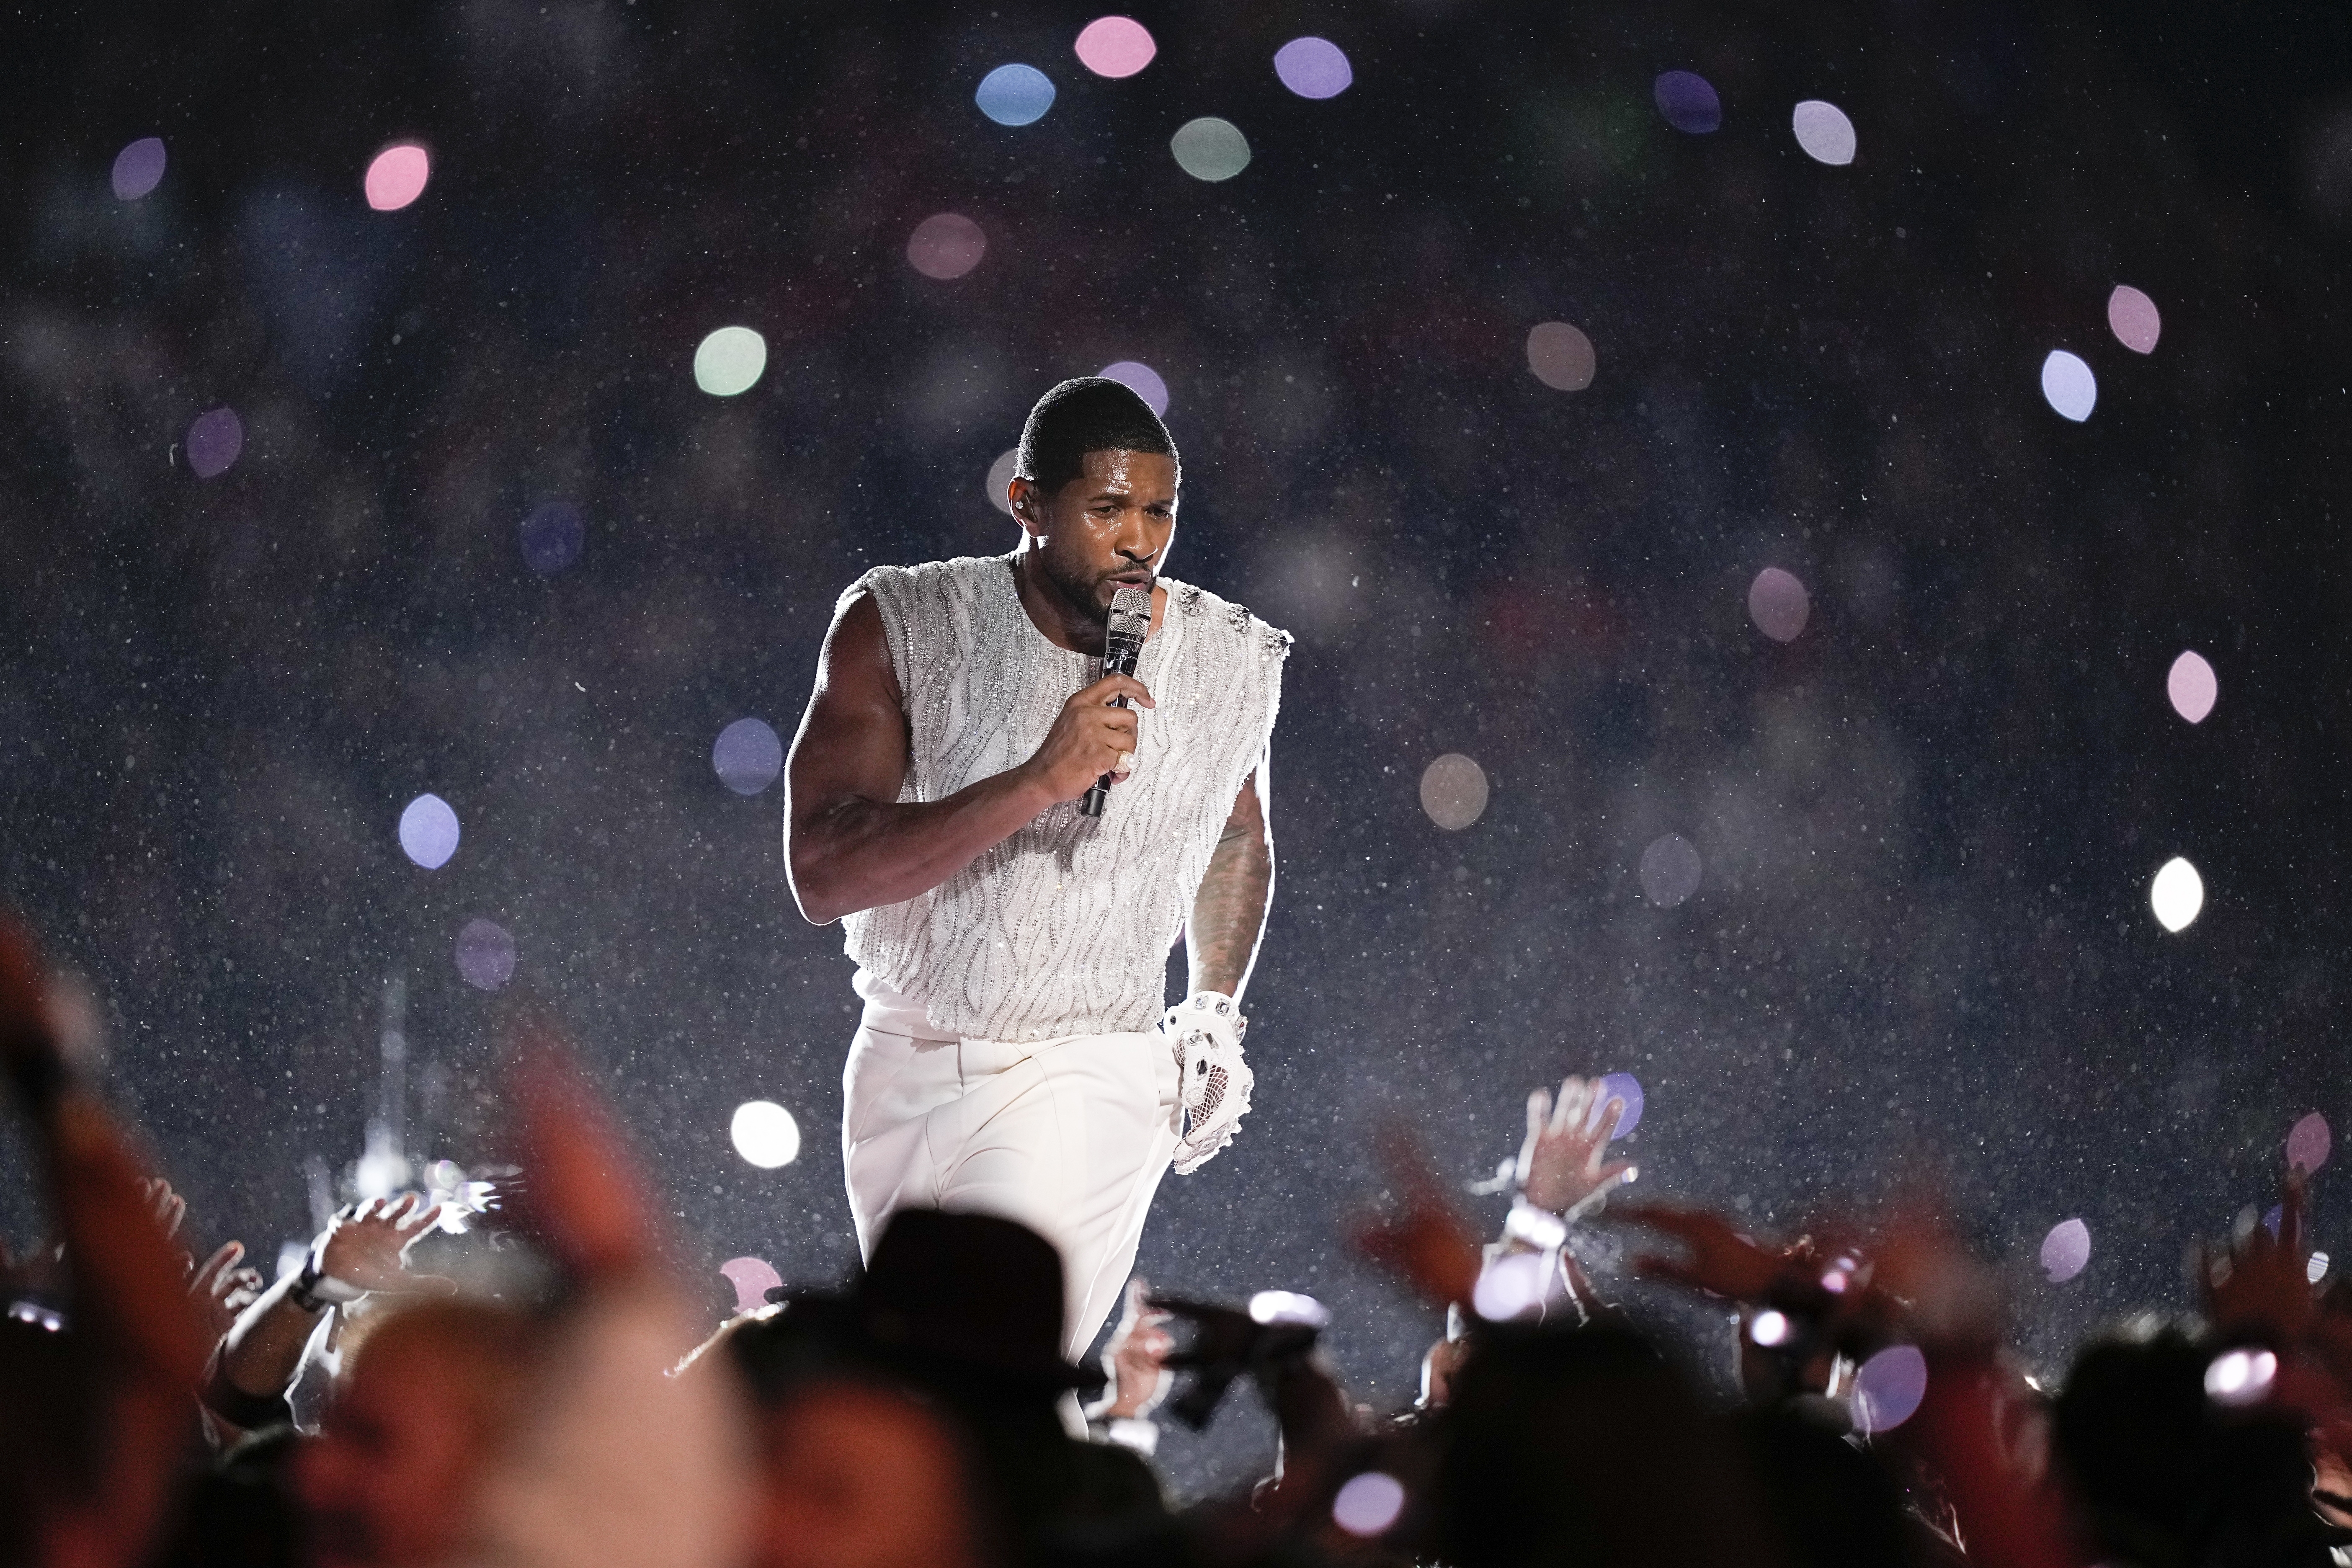 Zu Beginn seines Auftritts beschwerten sich die Fans darüber, dass sie Usher nicht hören konnten